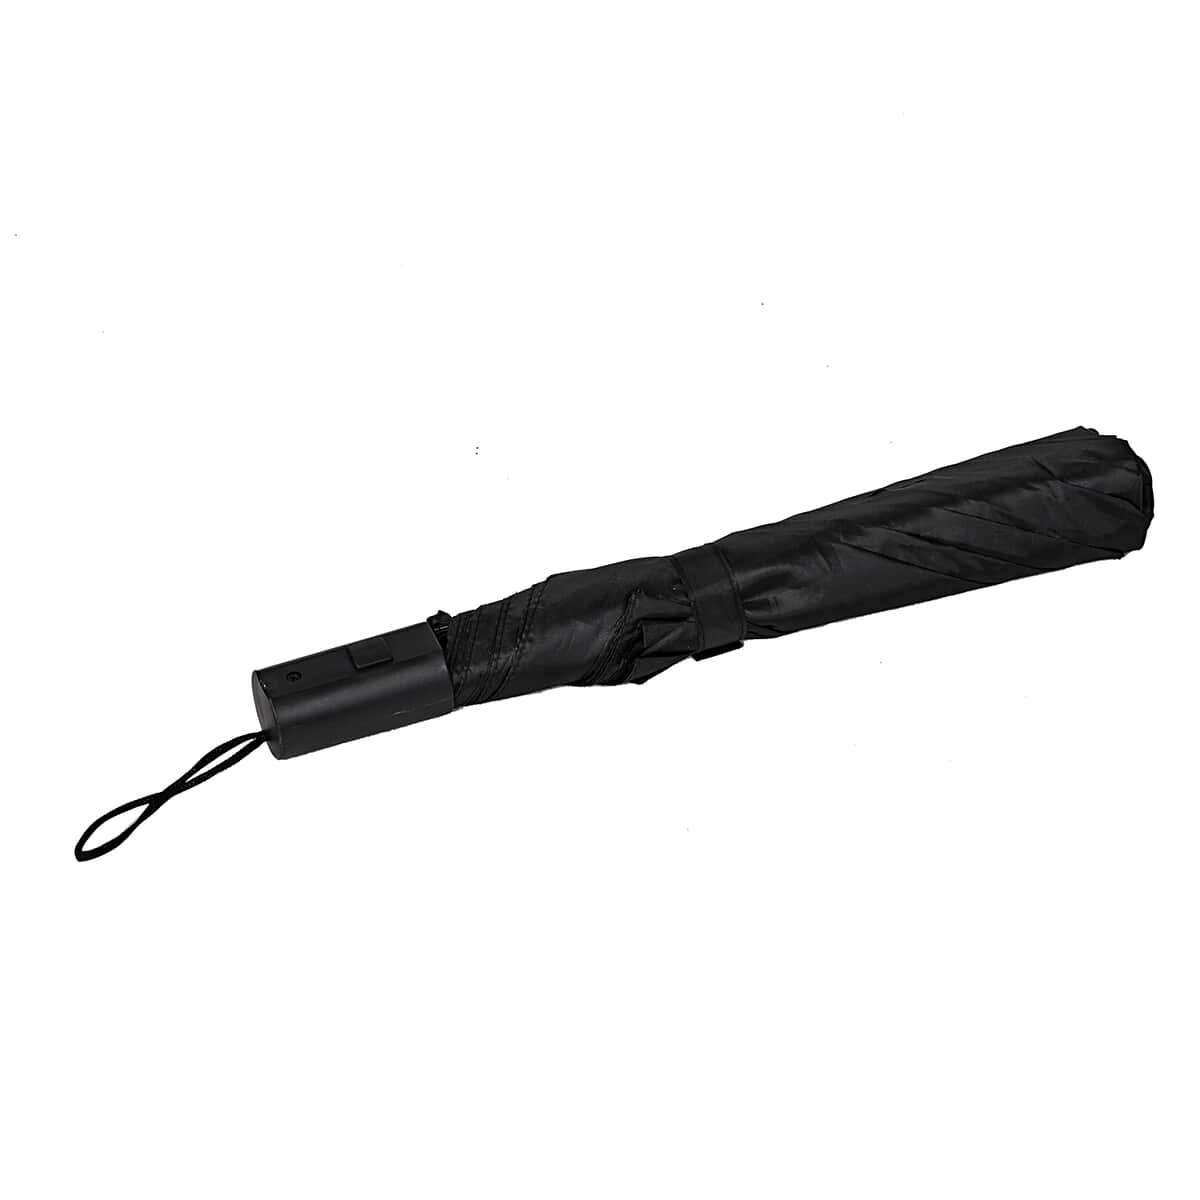 42 Inches Auto Folding Umbrella -Black image number 0